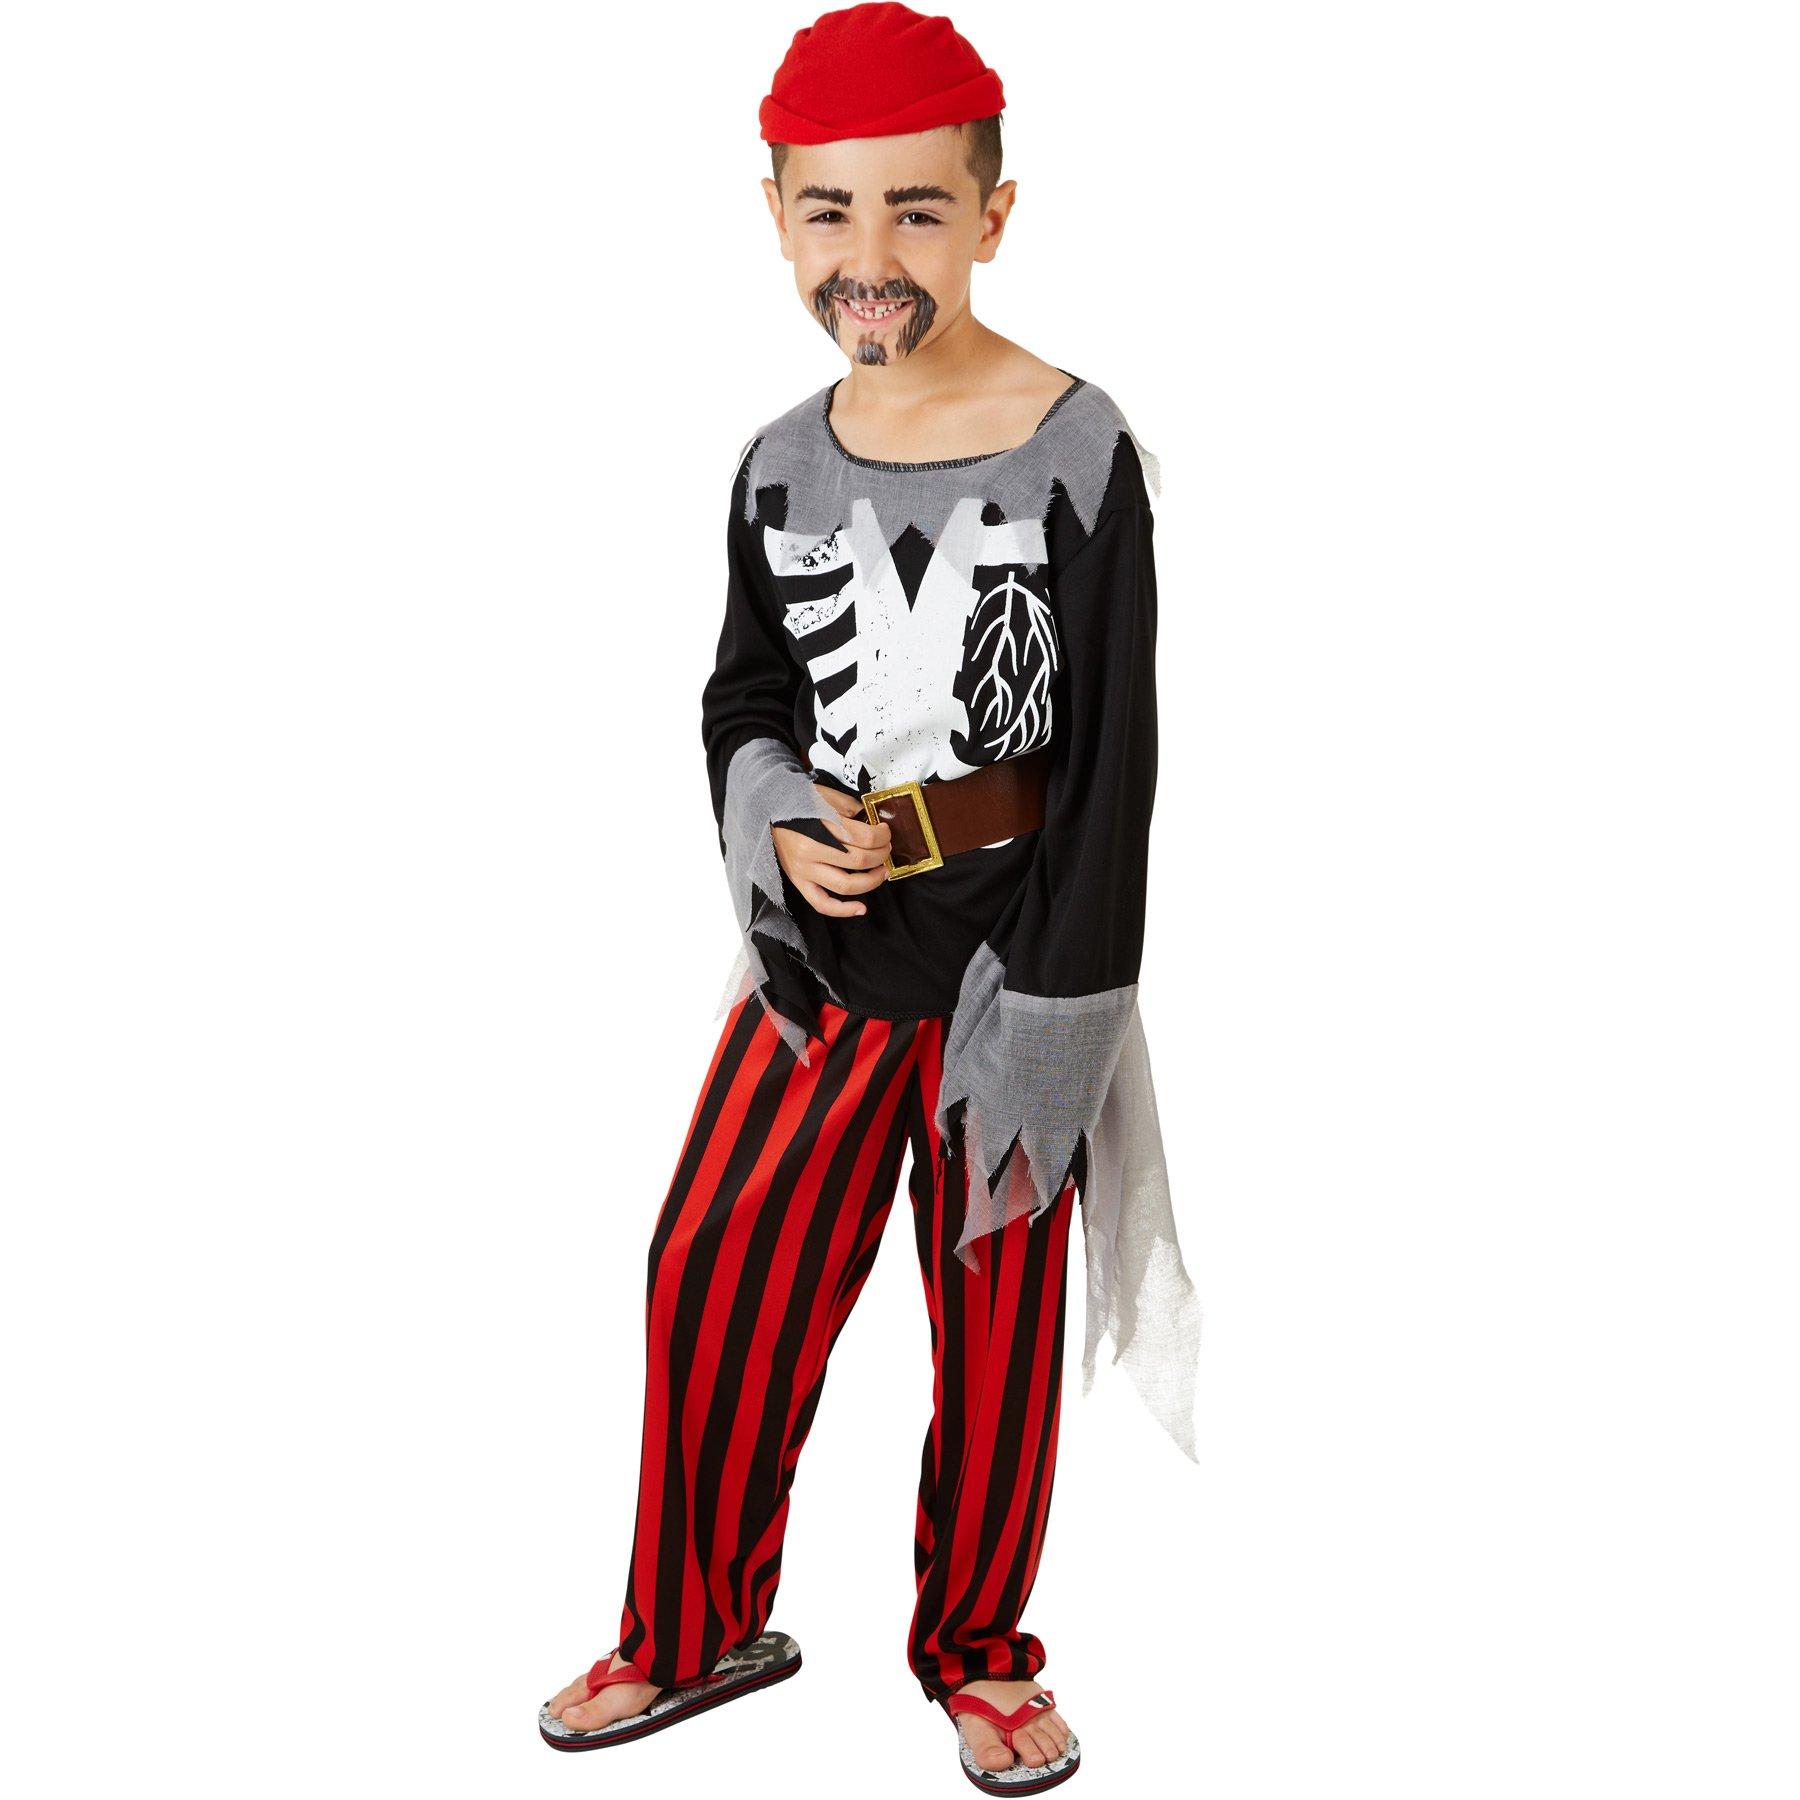 Tectake  Costume da bambino/ragazzo - Pirata 